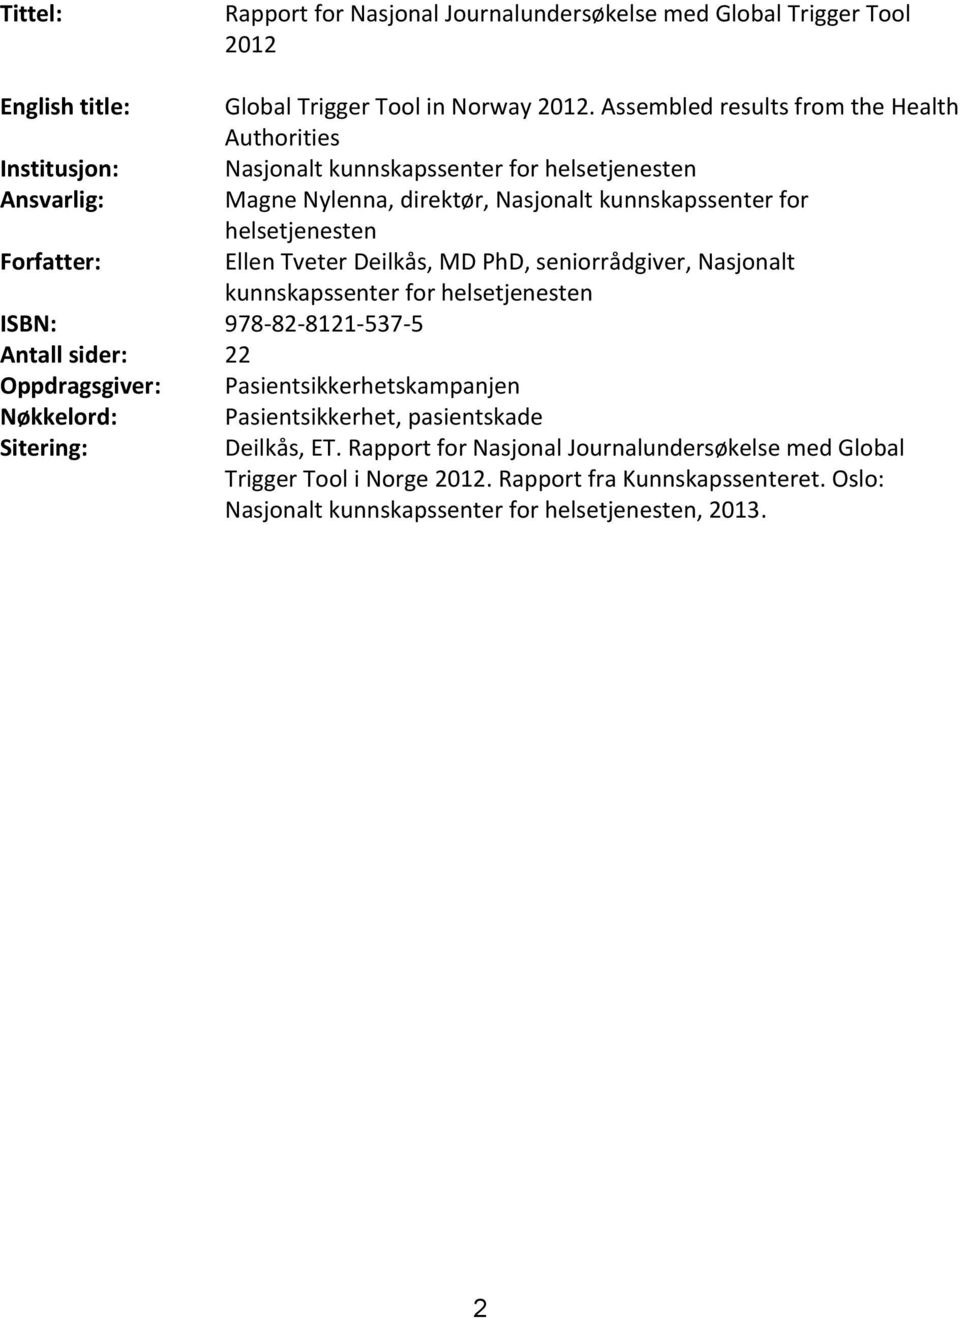 helsetjenesten Forfatter: Ellen Tveter Deilkås, MD PhD, seniorrådgiver, Nasjonalt kunnskapssenter for helsetjenesten ISBN: 978-82-8121-537-5 Antall sider: 22 Oppdragsgiver: